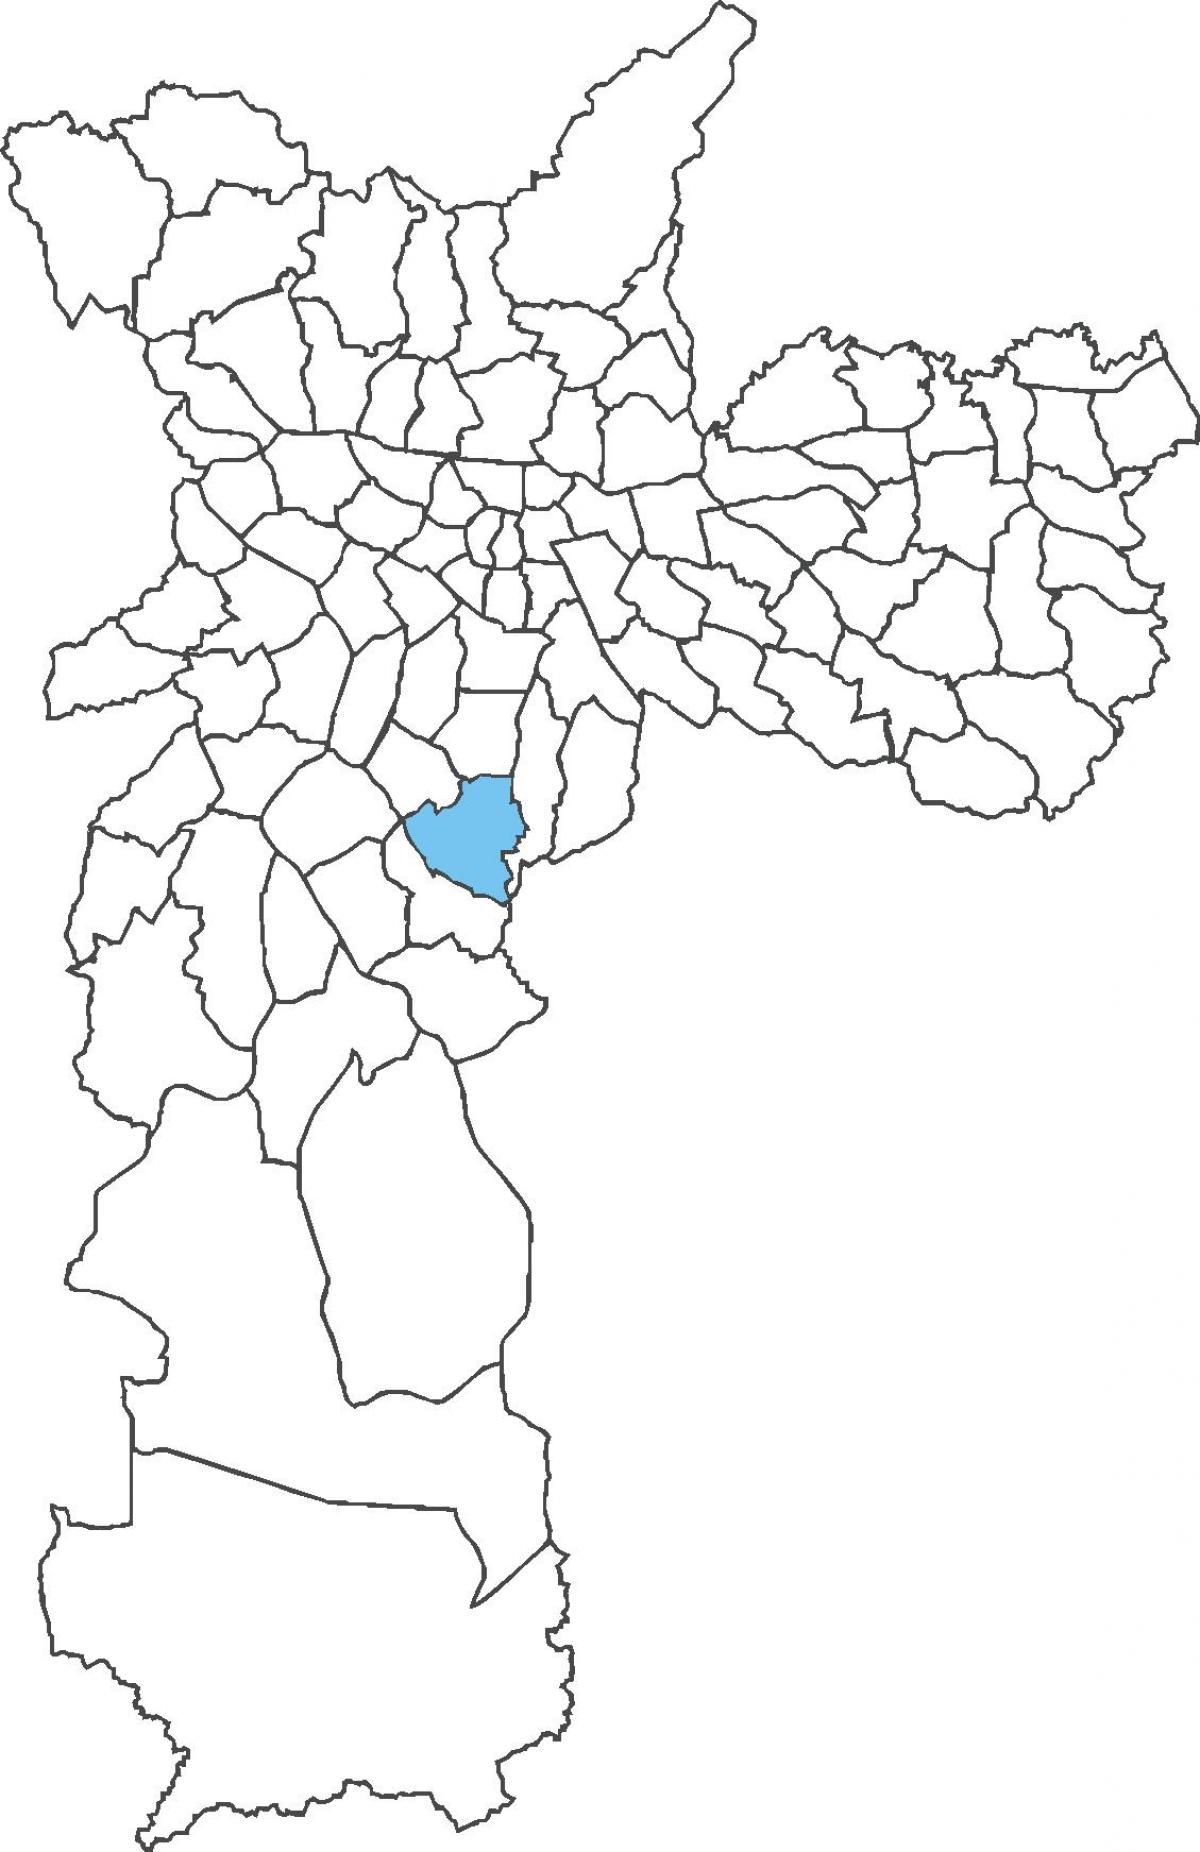 지도의 자바쿠아라 district